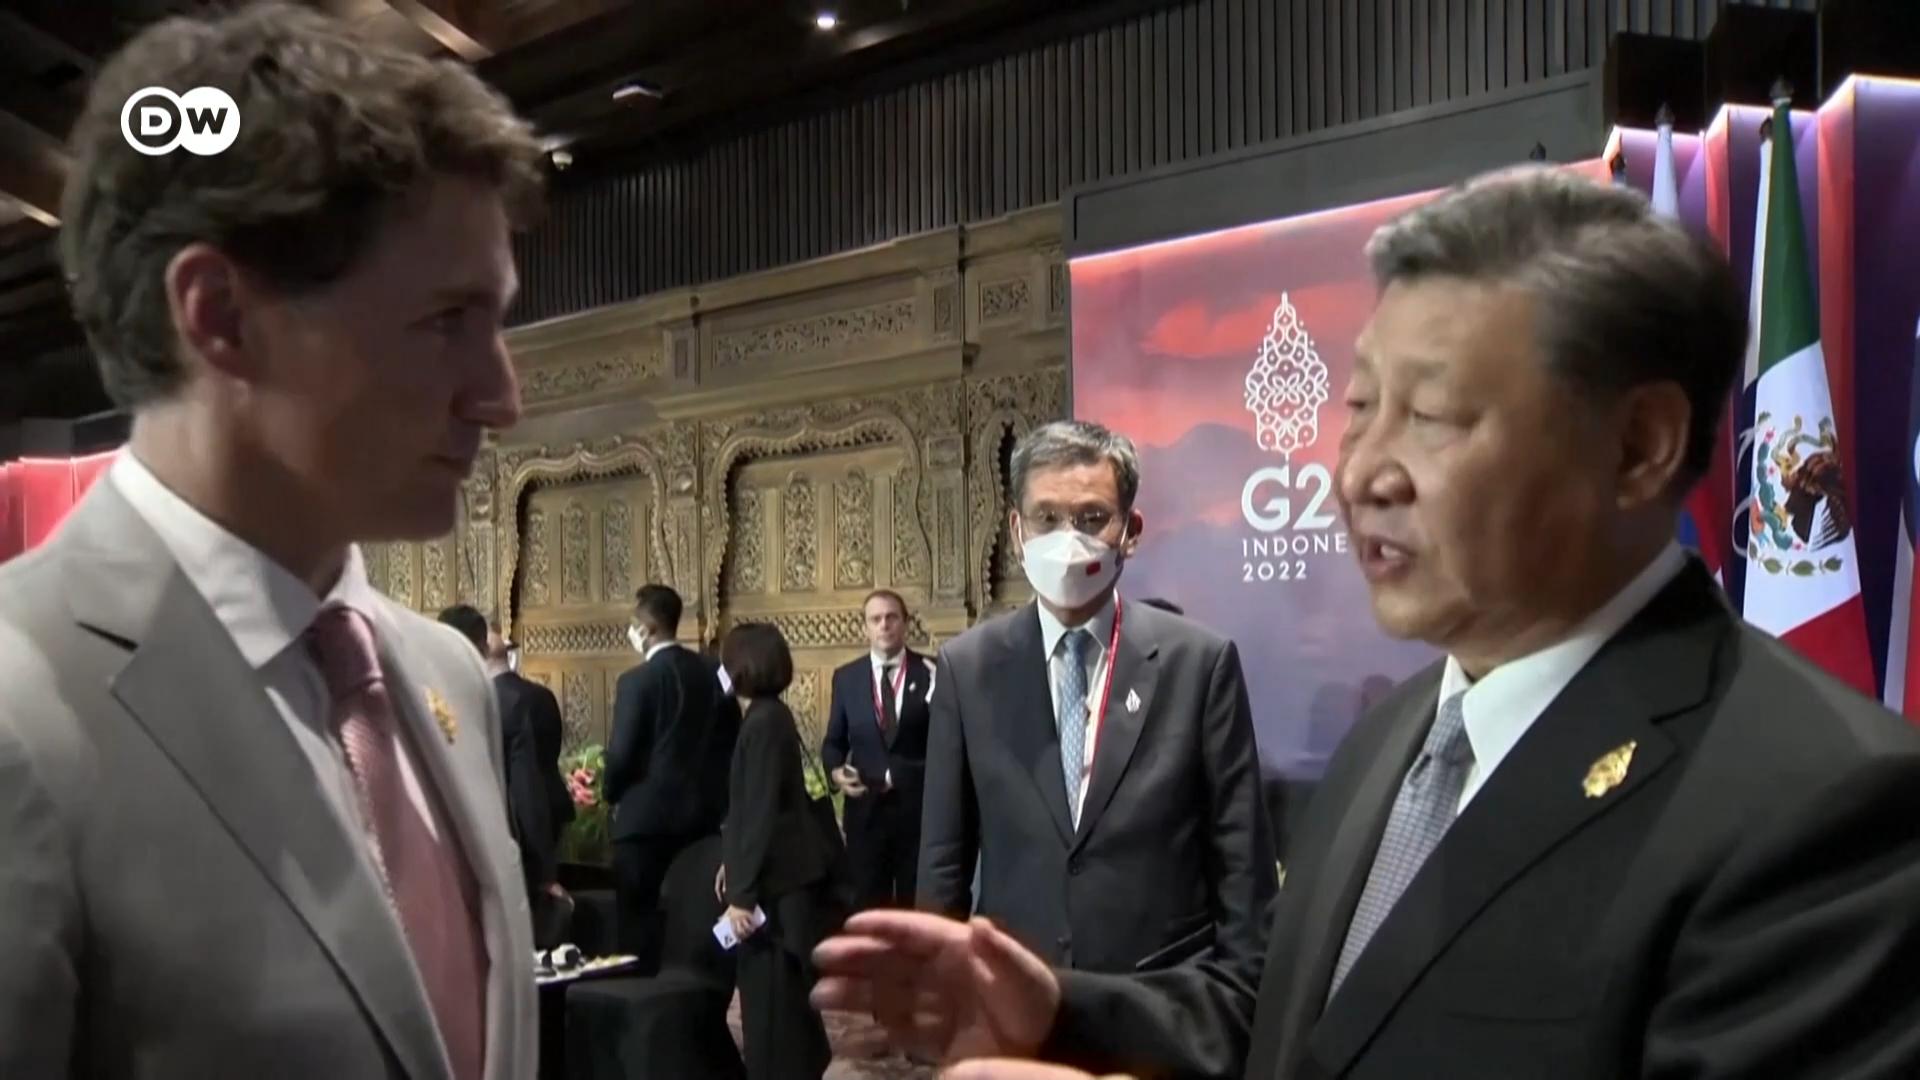 中国国家主席习近平和加拿大总理特鲁多在出席G20峰会一场活动间隙进行了对话。媒体捕捉到了谈话的一部分。习近平不满地抱怨特鲁多将他们谈话的内容透露给了媒体。特鲁多是如何回应的呢？